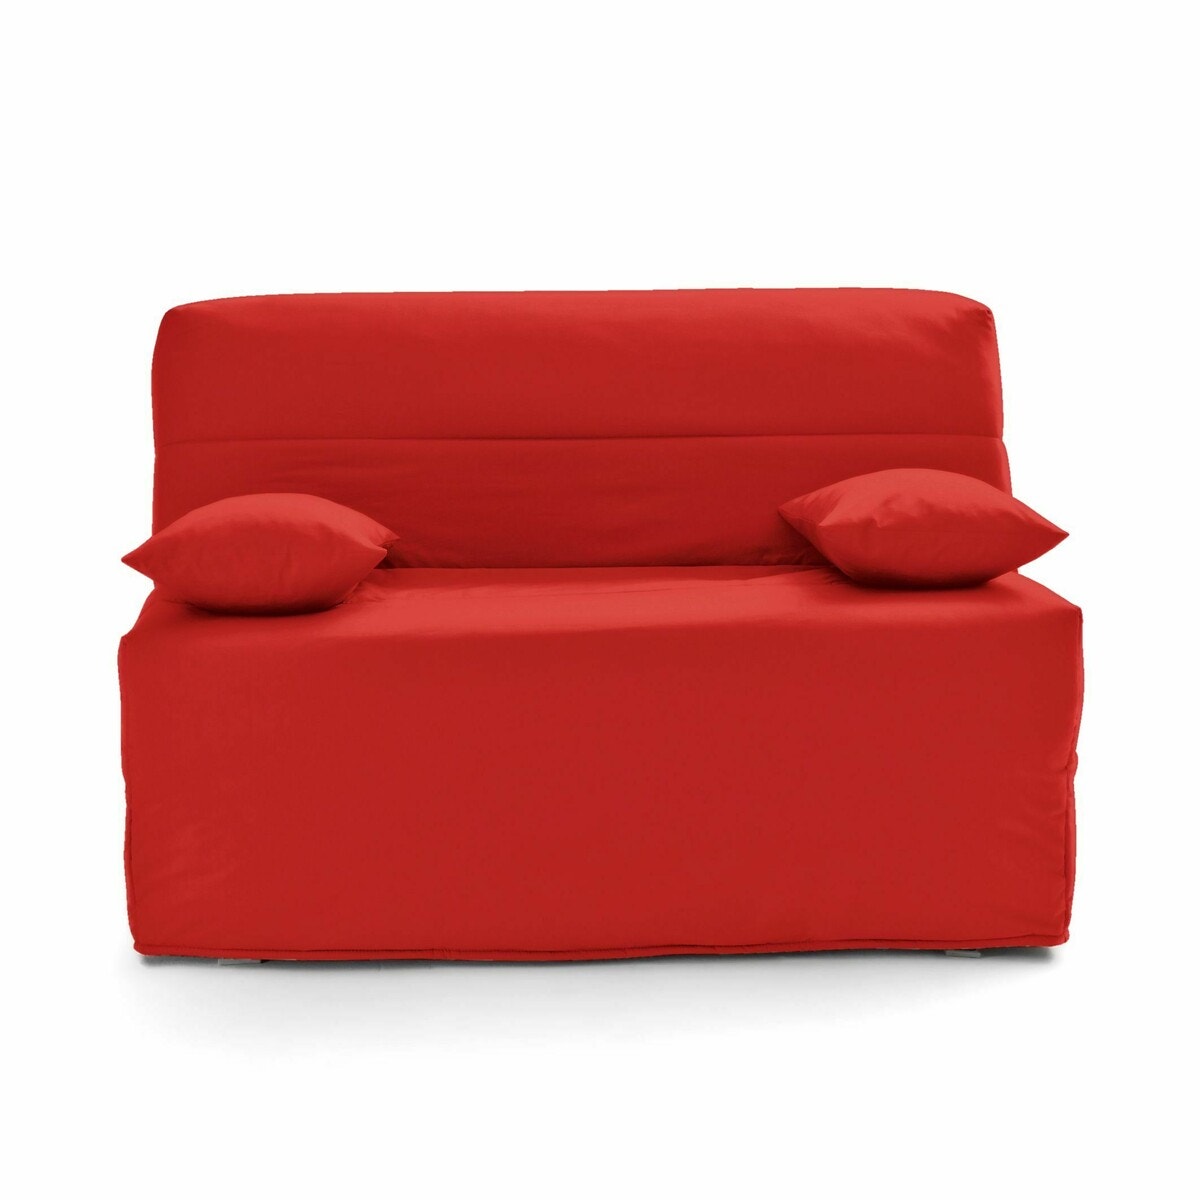 Σπίτι > Έπιπλα > Καθιστικό > Καναπέδες-κρεβάτια > Πτυσσόμενοι καναπέδες BZ Πτυσσόμενος καναπές-κρεβάτι με αφρό Bultex 15 εκ.